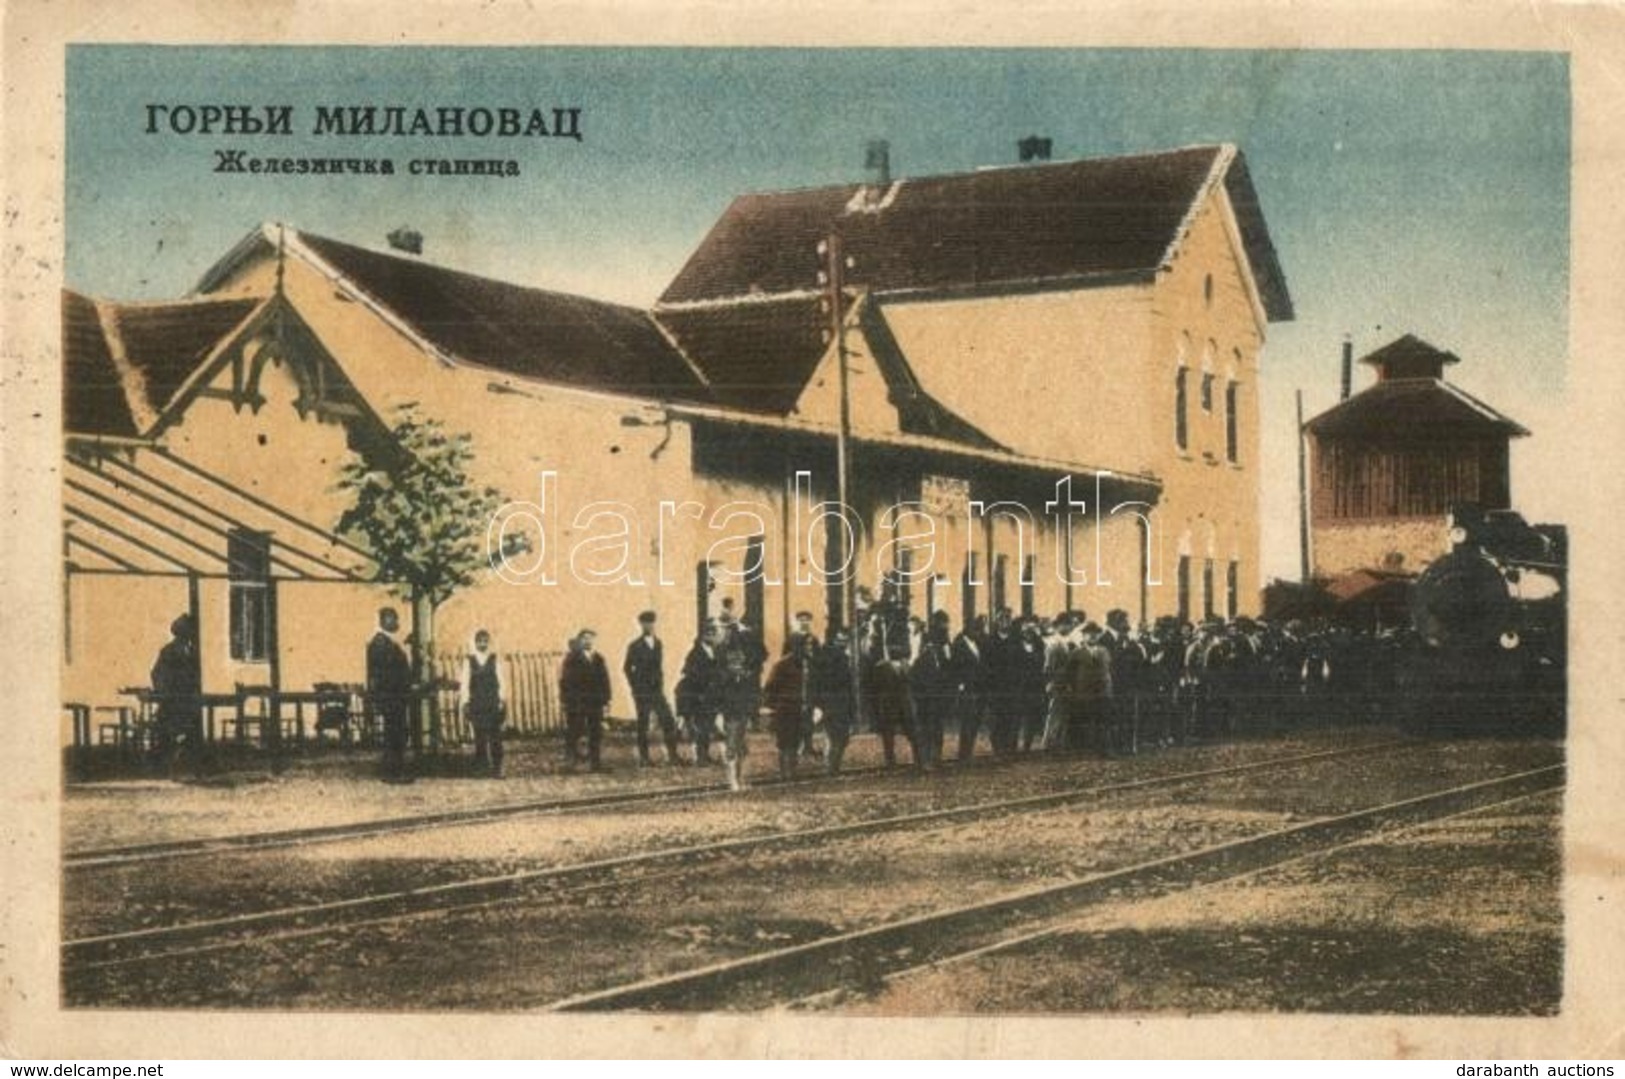 T2/T3 Gornji Milanovac, Zeleznicka Stanica / Railway Station, Locomotive, Crowd (EK) - Unclassified